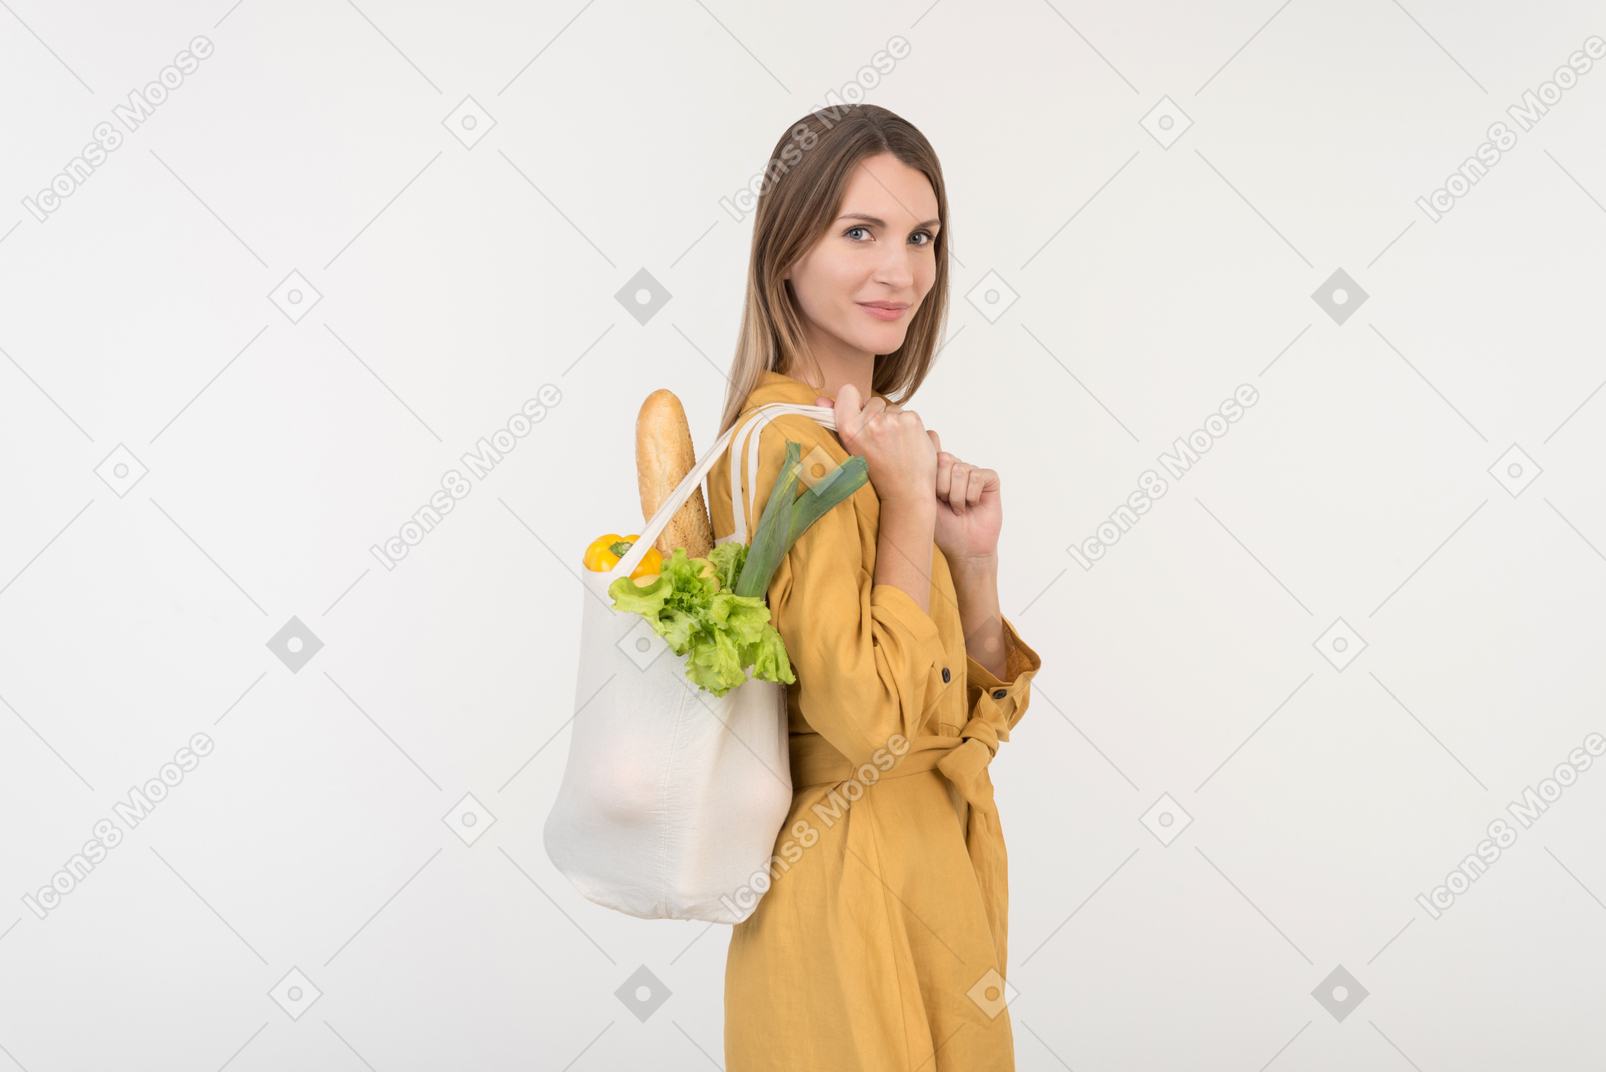 Jovem mulher segurando sacola de compras com legumes e olhando para baixo